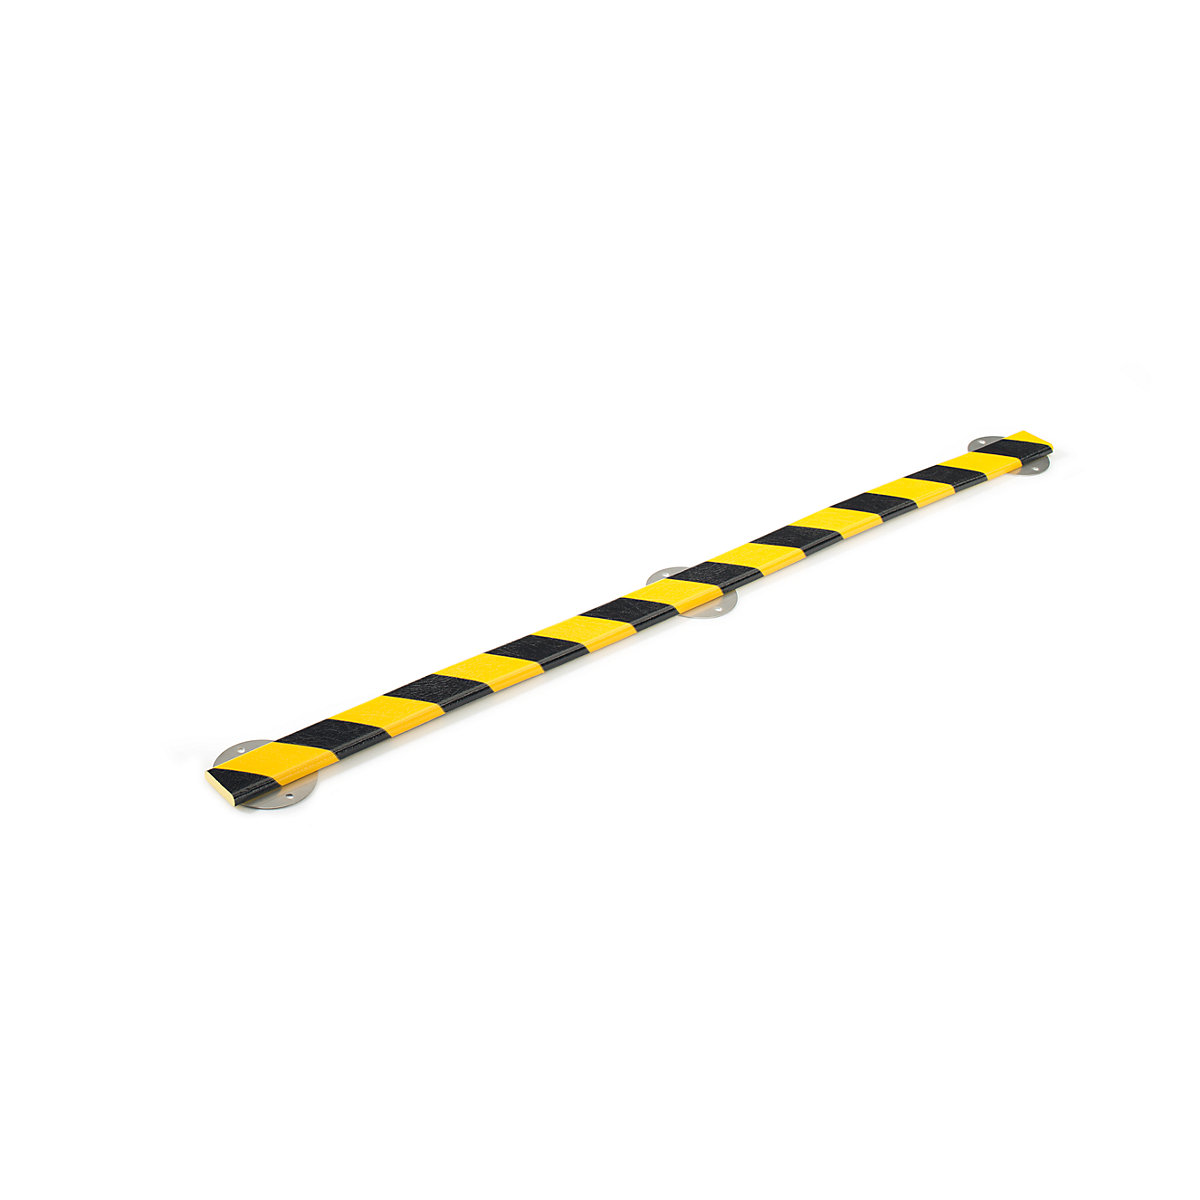 SHG – Protecție pentru suprafețe Knuffi® cu șină de montaj, tip F, bucată de 1 m, galben / negru